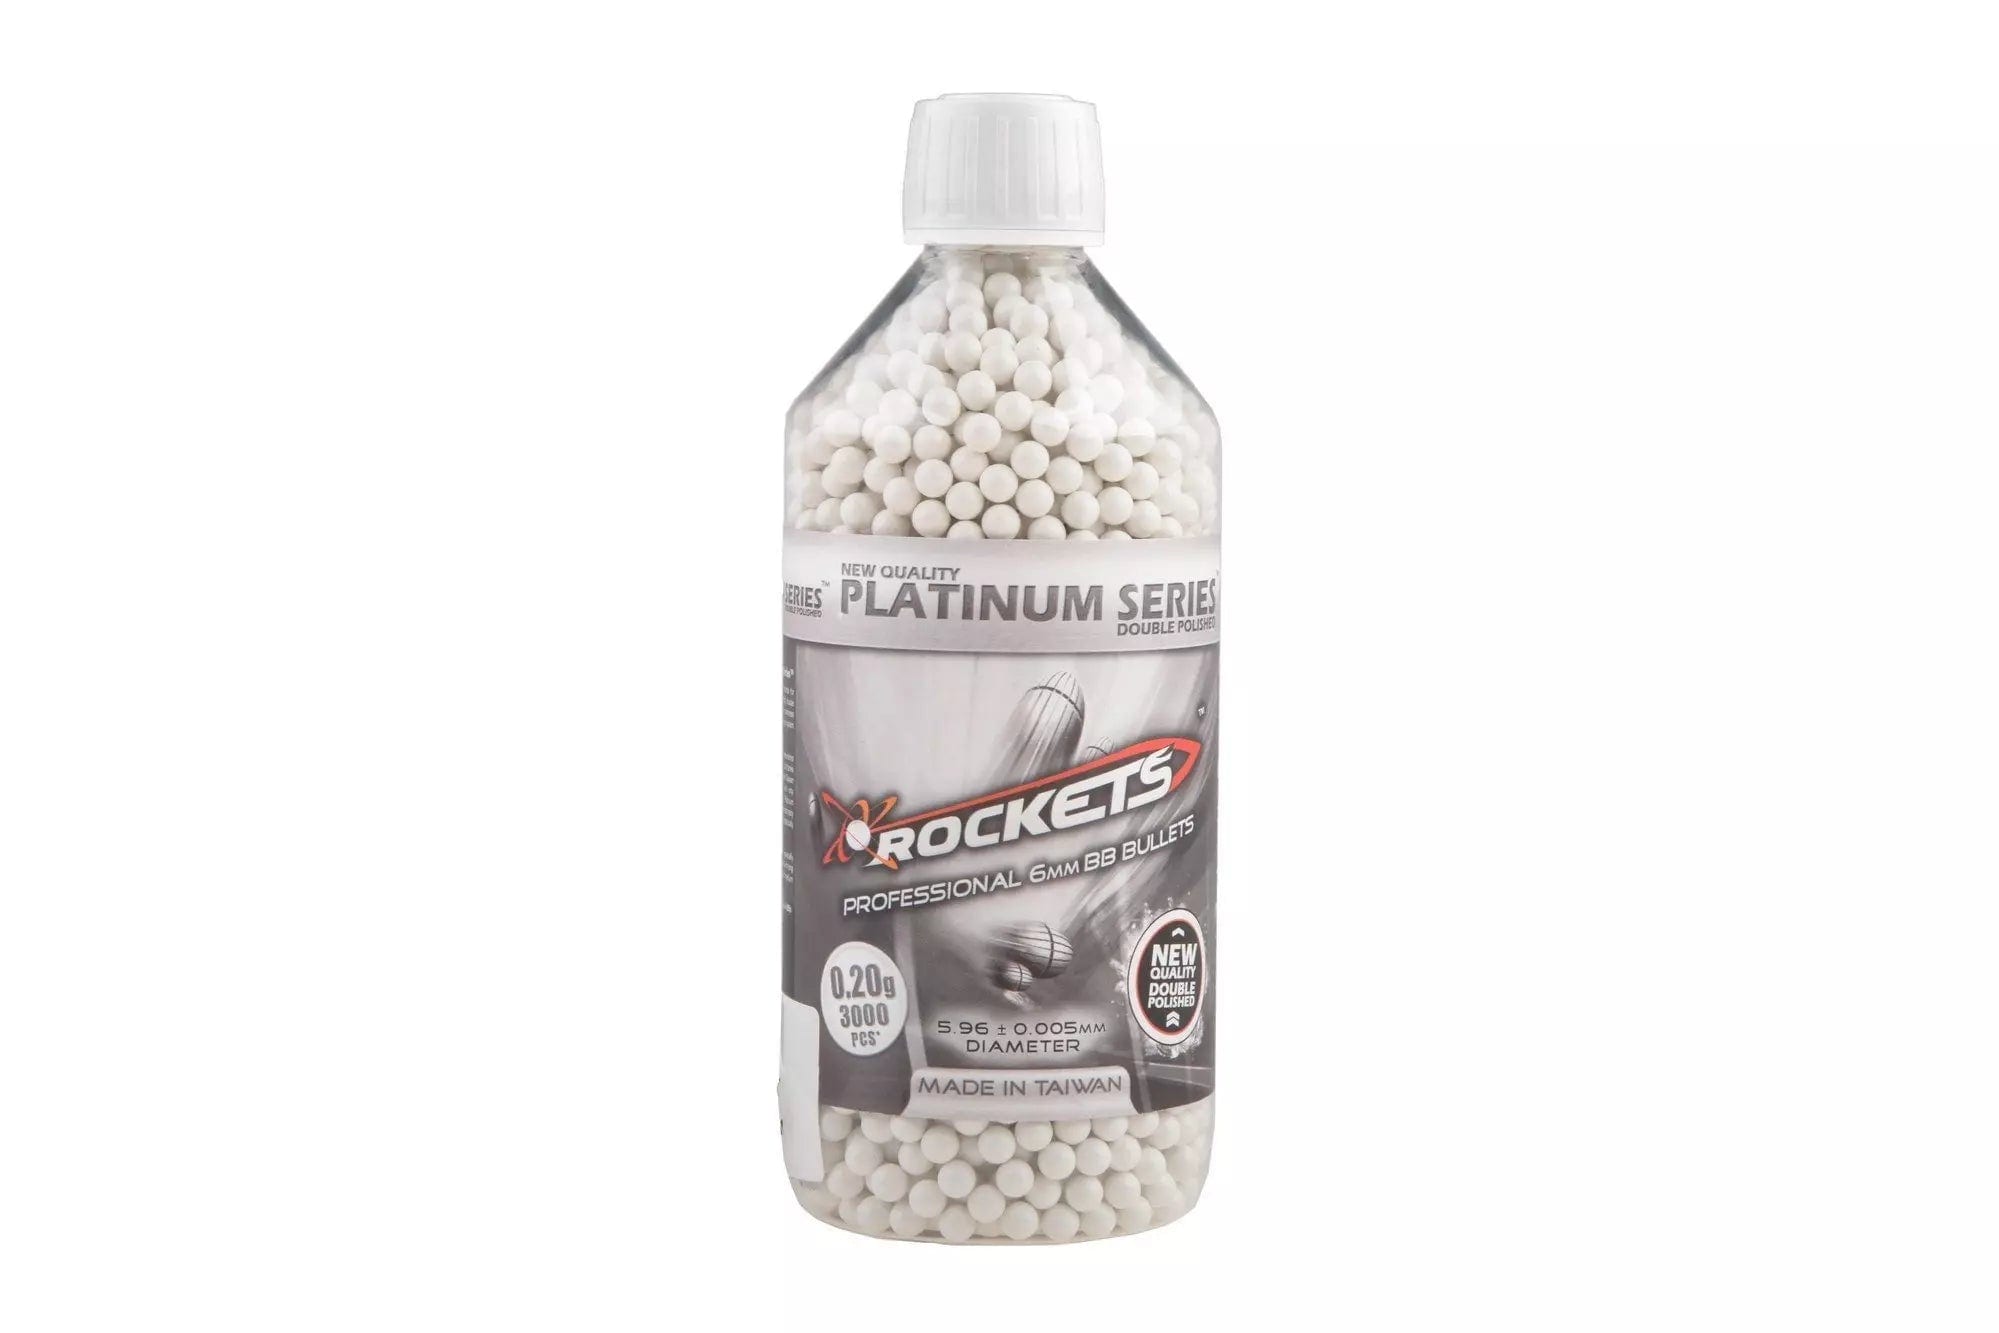 Rockets Platinum Series 0.20g BB pellets - 3000pcs bottle